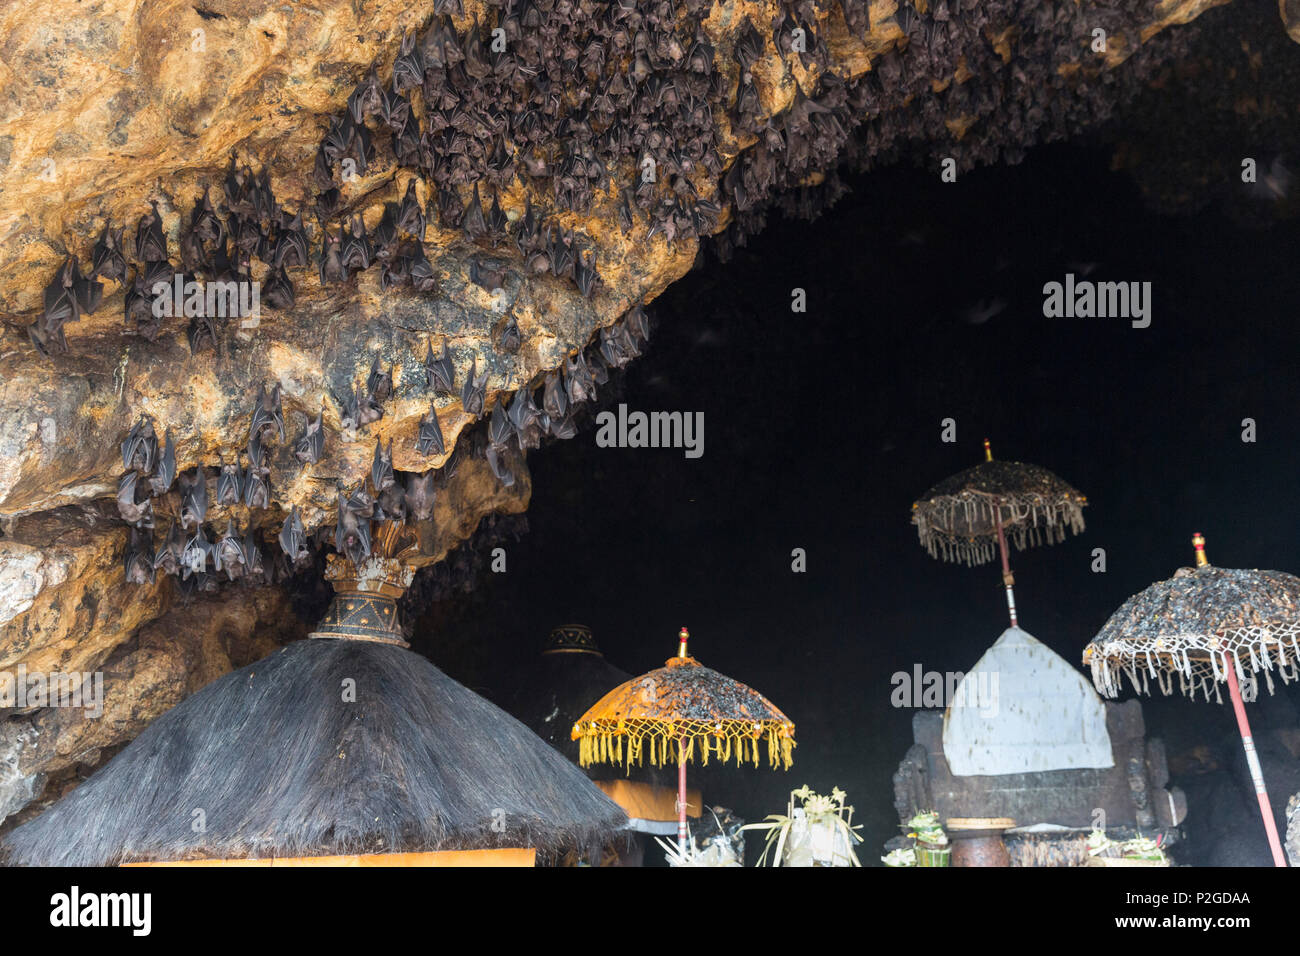 Festival Odalan, Pura, grotte de chauves-souris de Goa Lawah, Padangbai Bali, Indonésie Banque D'Images